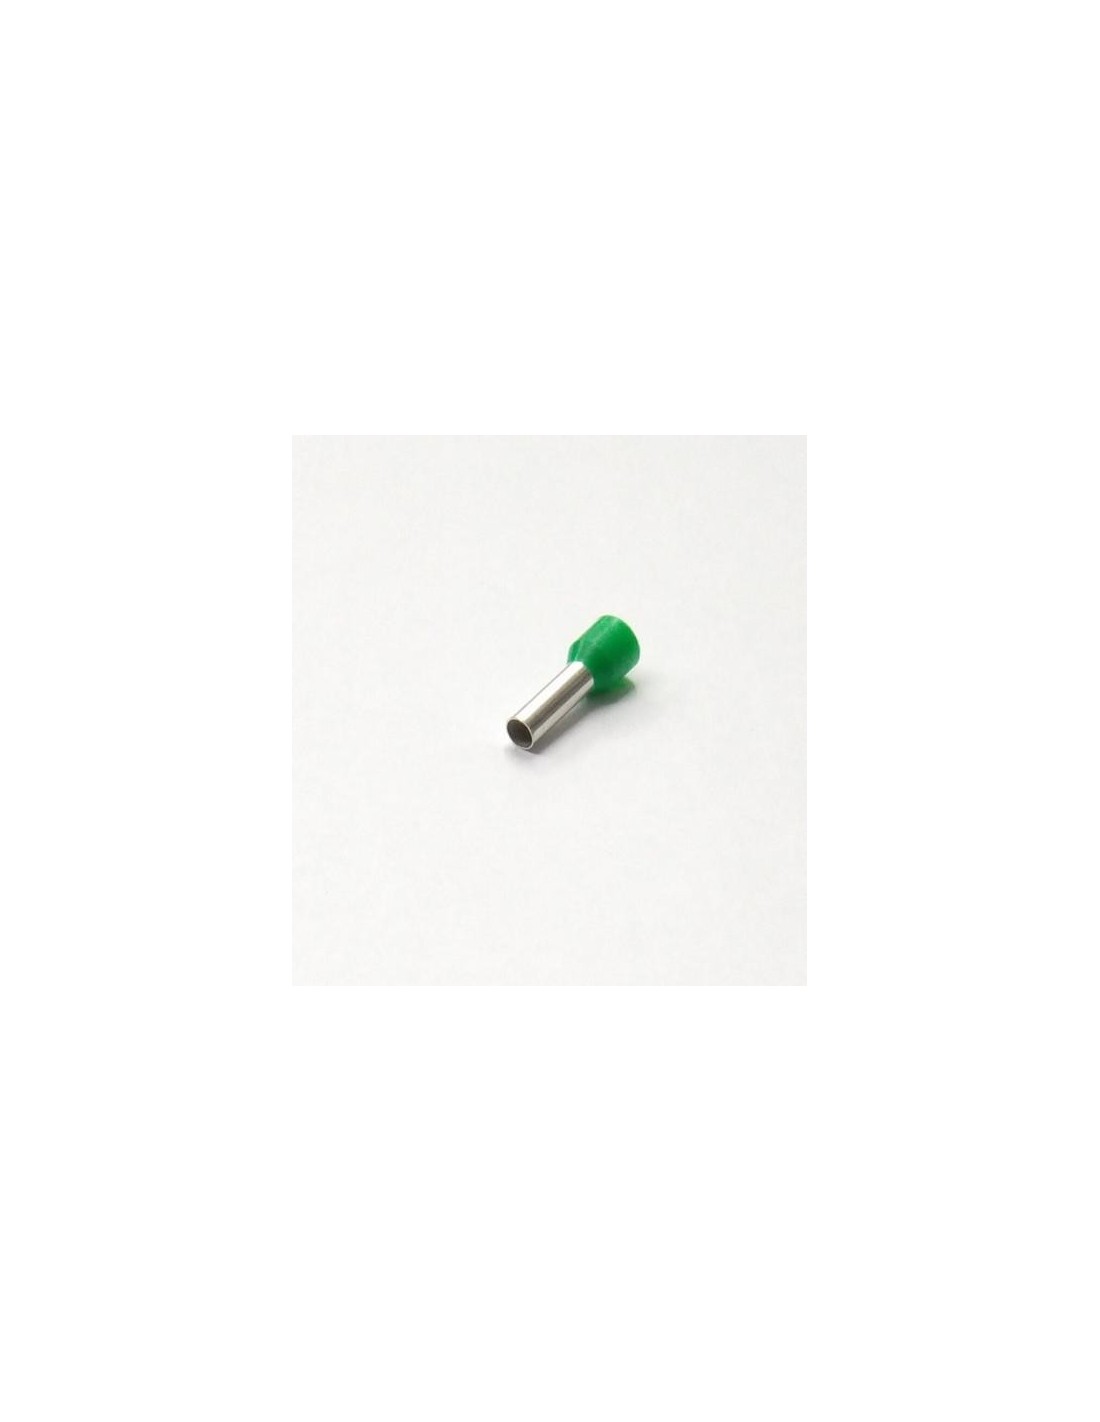 Punteras aisladas hueca para cable de 6mm verde